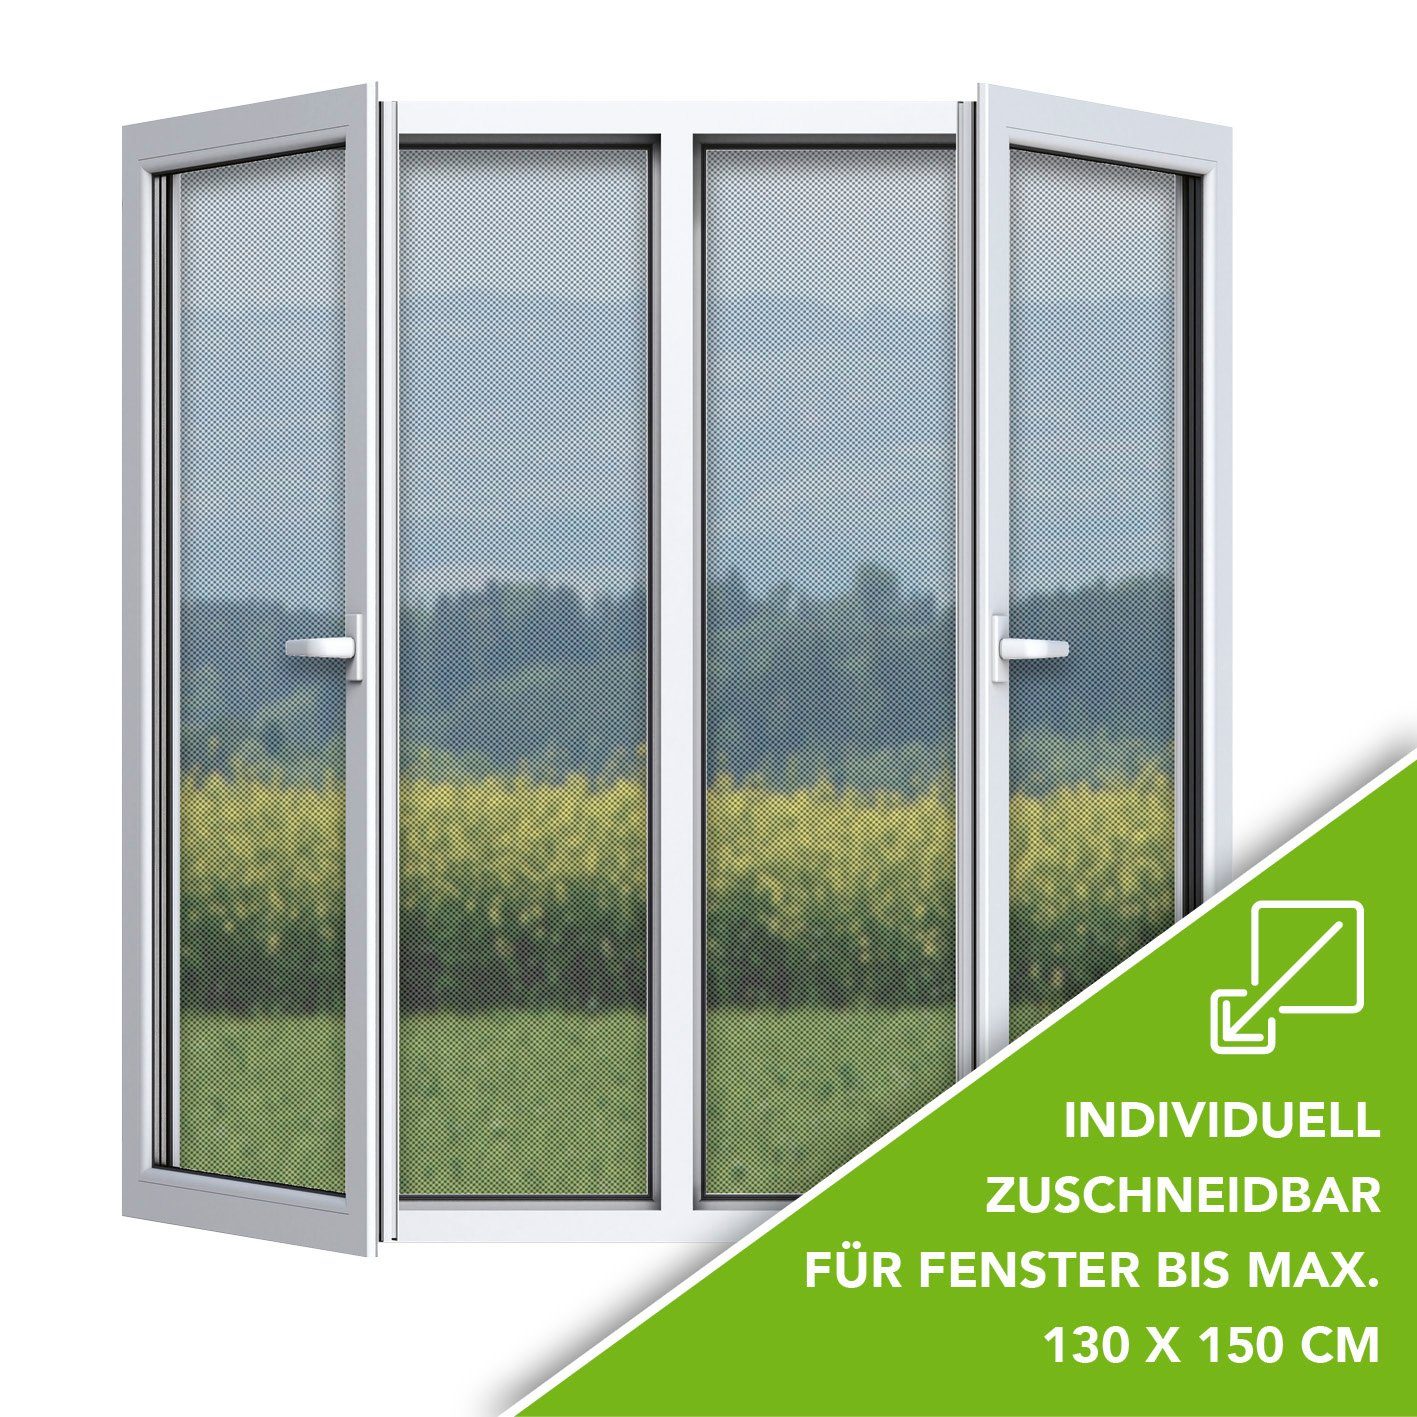 EASYmaxx Insektenschutz-Fensterrahmen Moskitonetz mit Klettverschluss, 130x150cm zuschneidbar